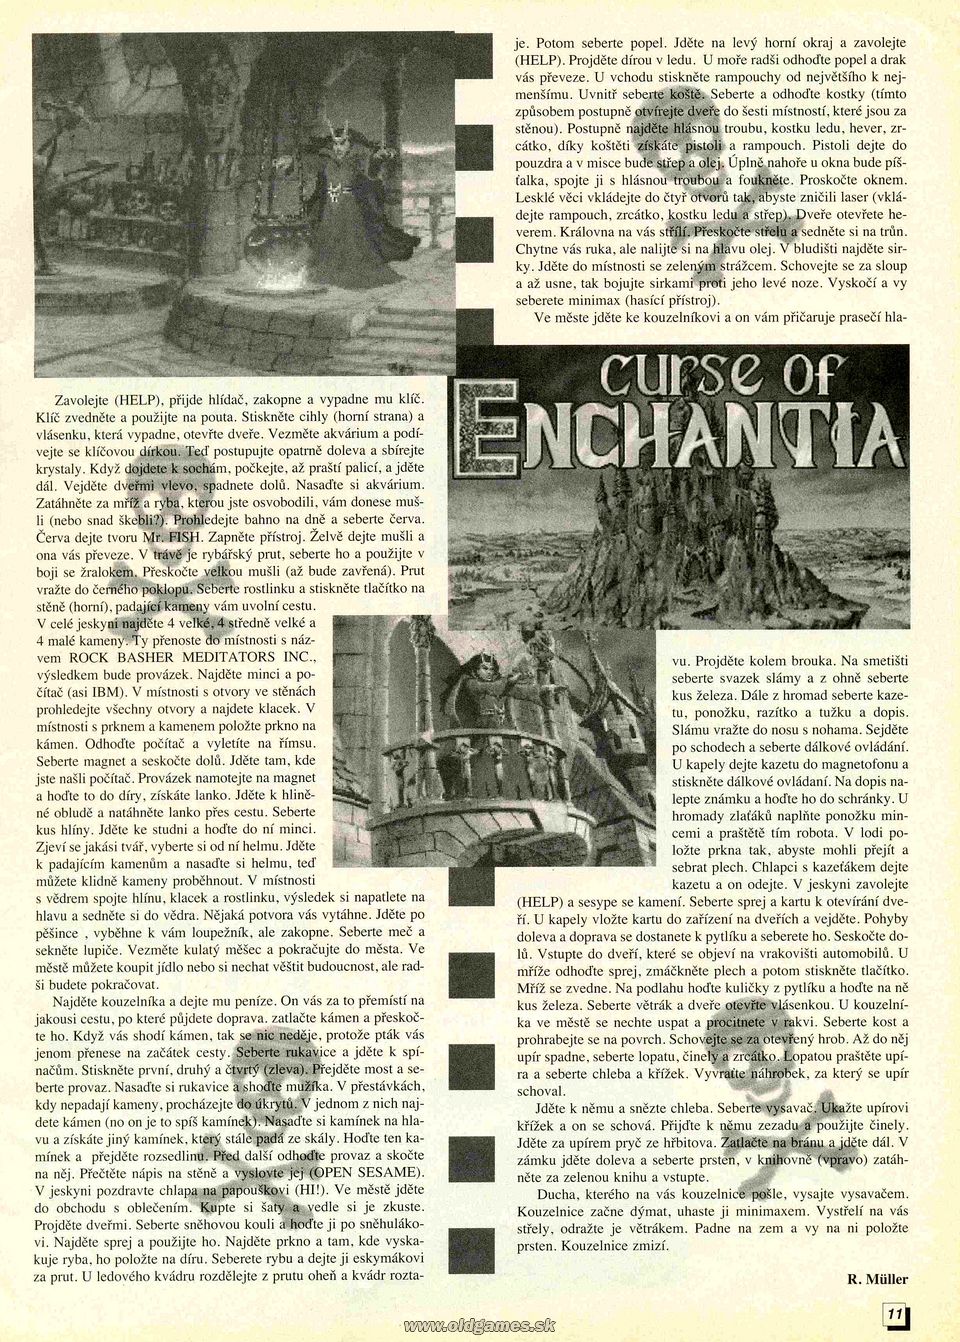 Curse of Enchantia, Návod